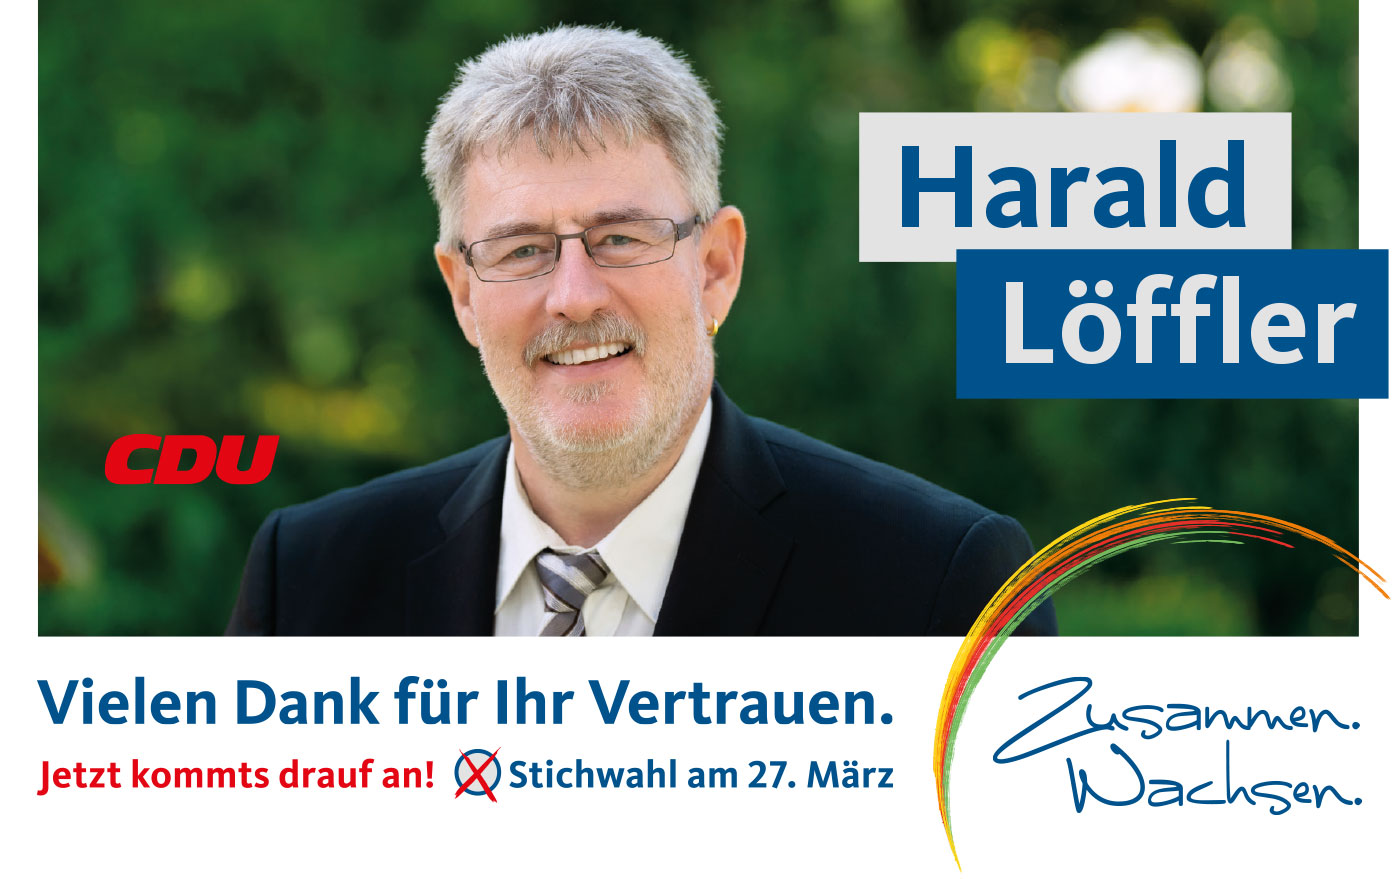 (c) Harald-loeffler.de